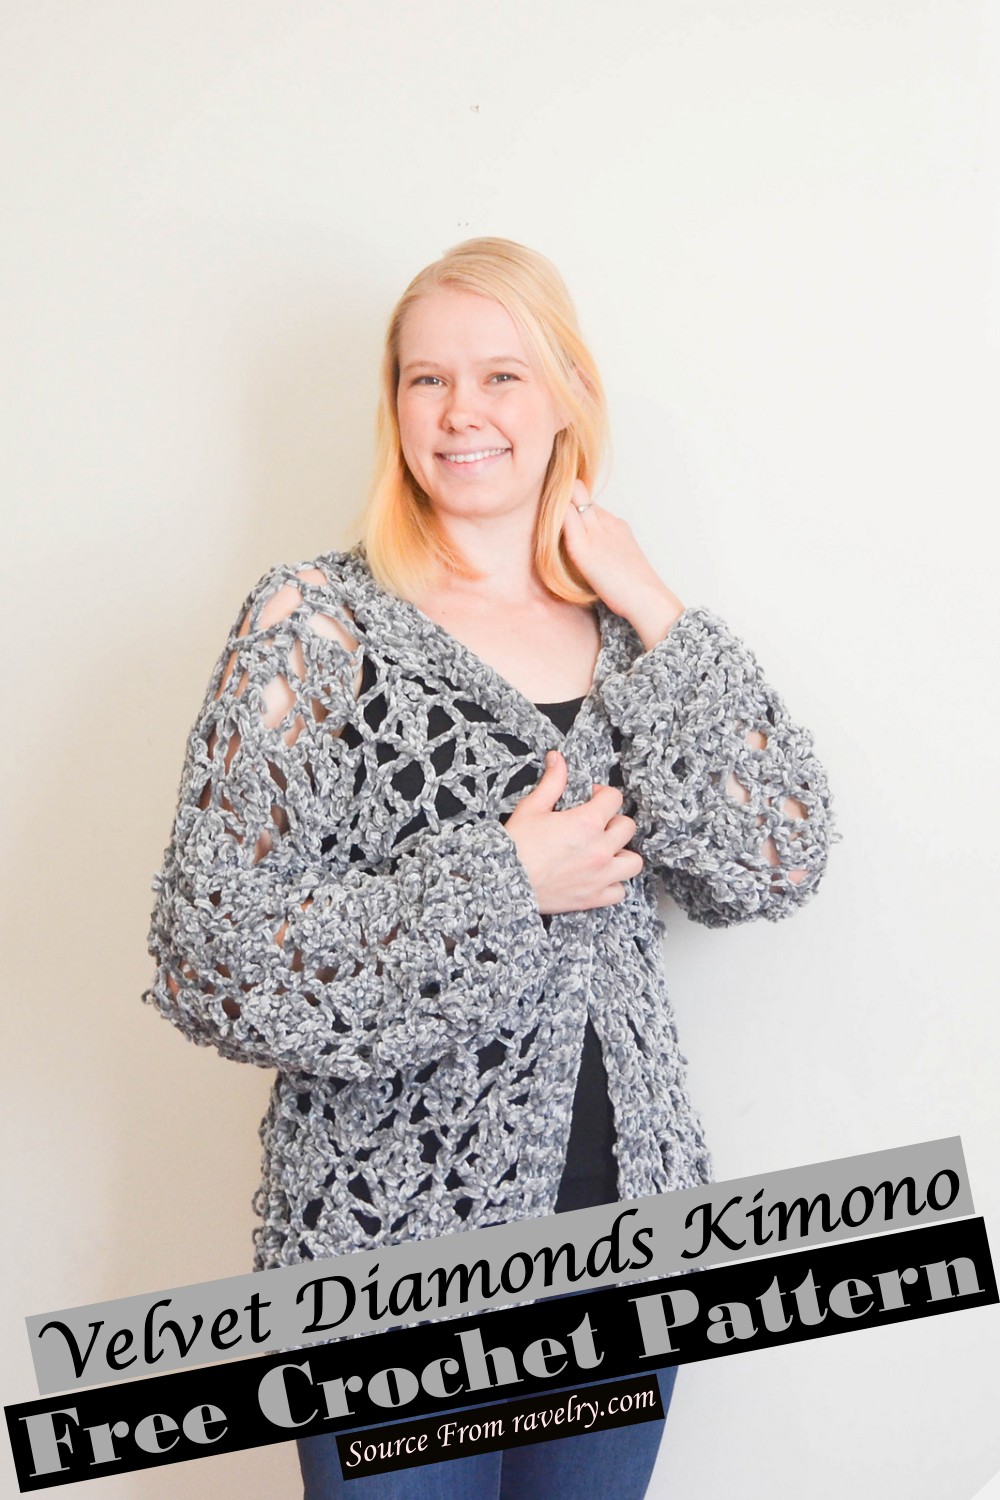 Velvet Diamonds Kimono Crochet Pattern